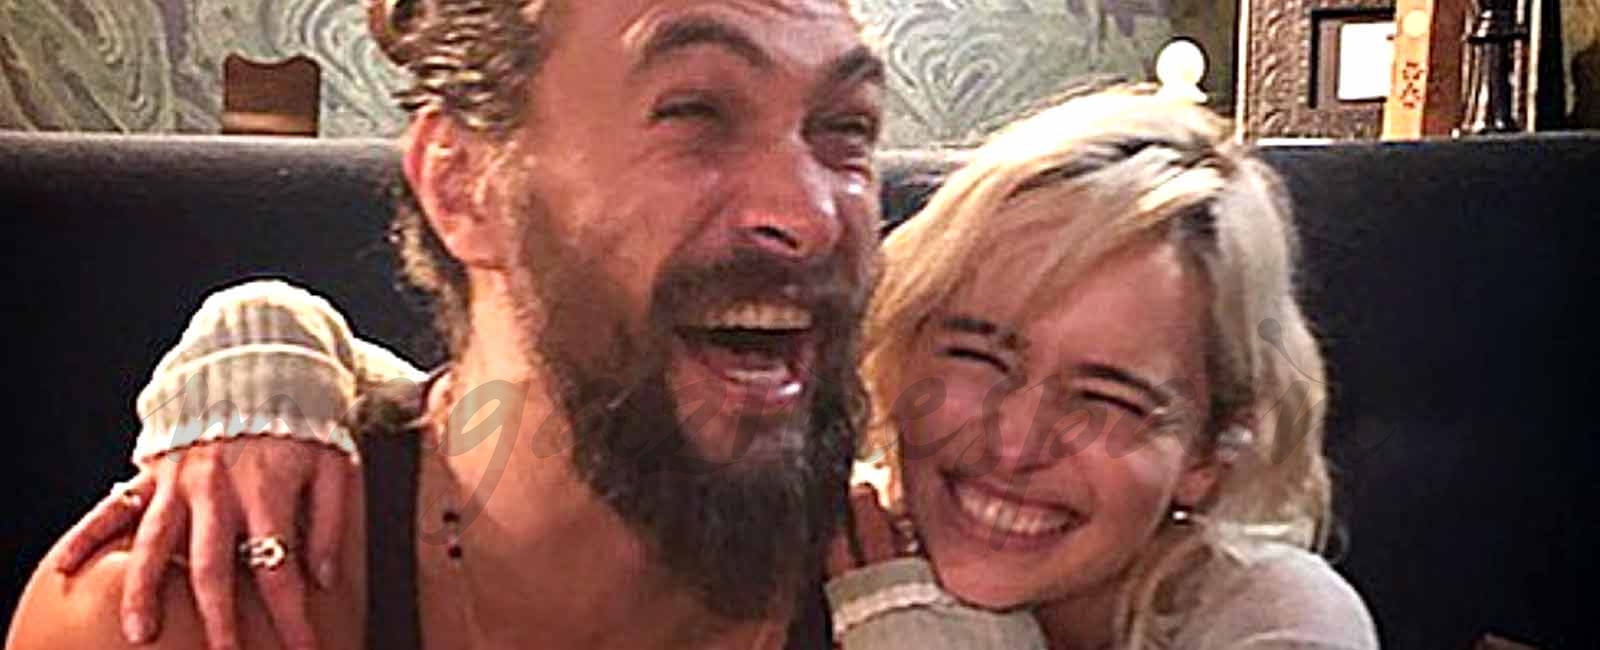 El divertido reencuentro de Emilia Clarke y su “marido” Jason Momoa